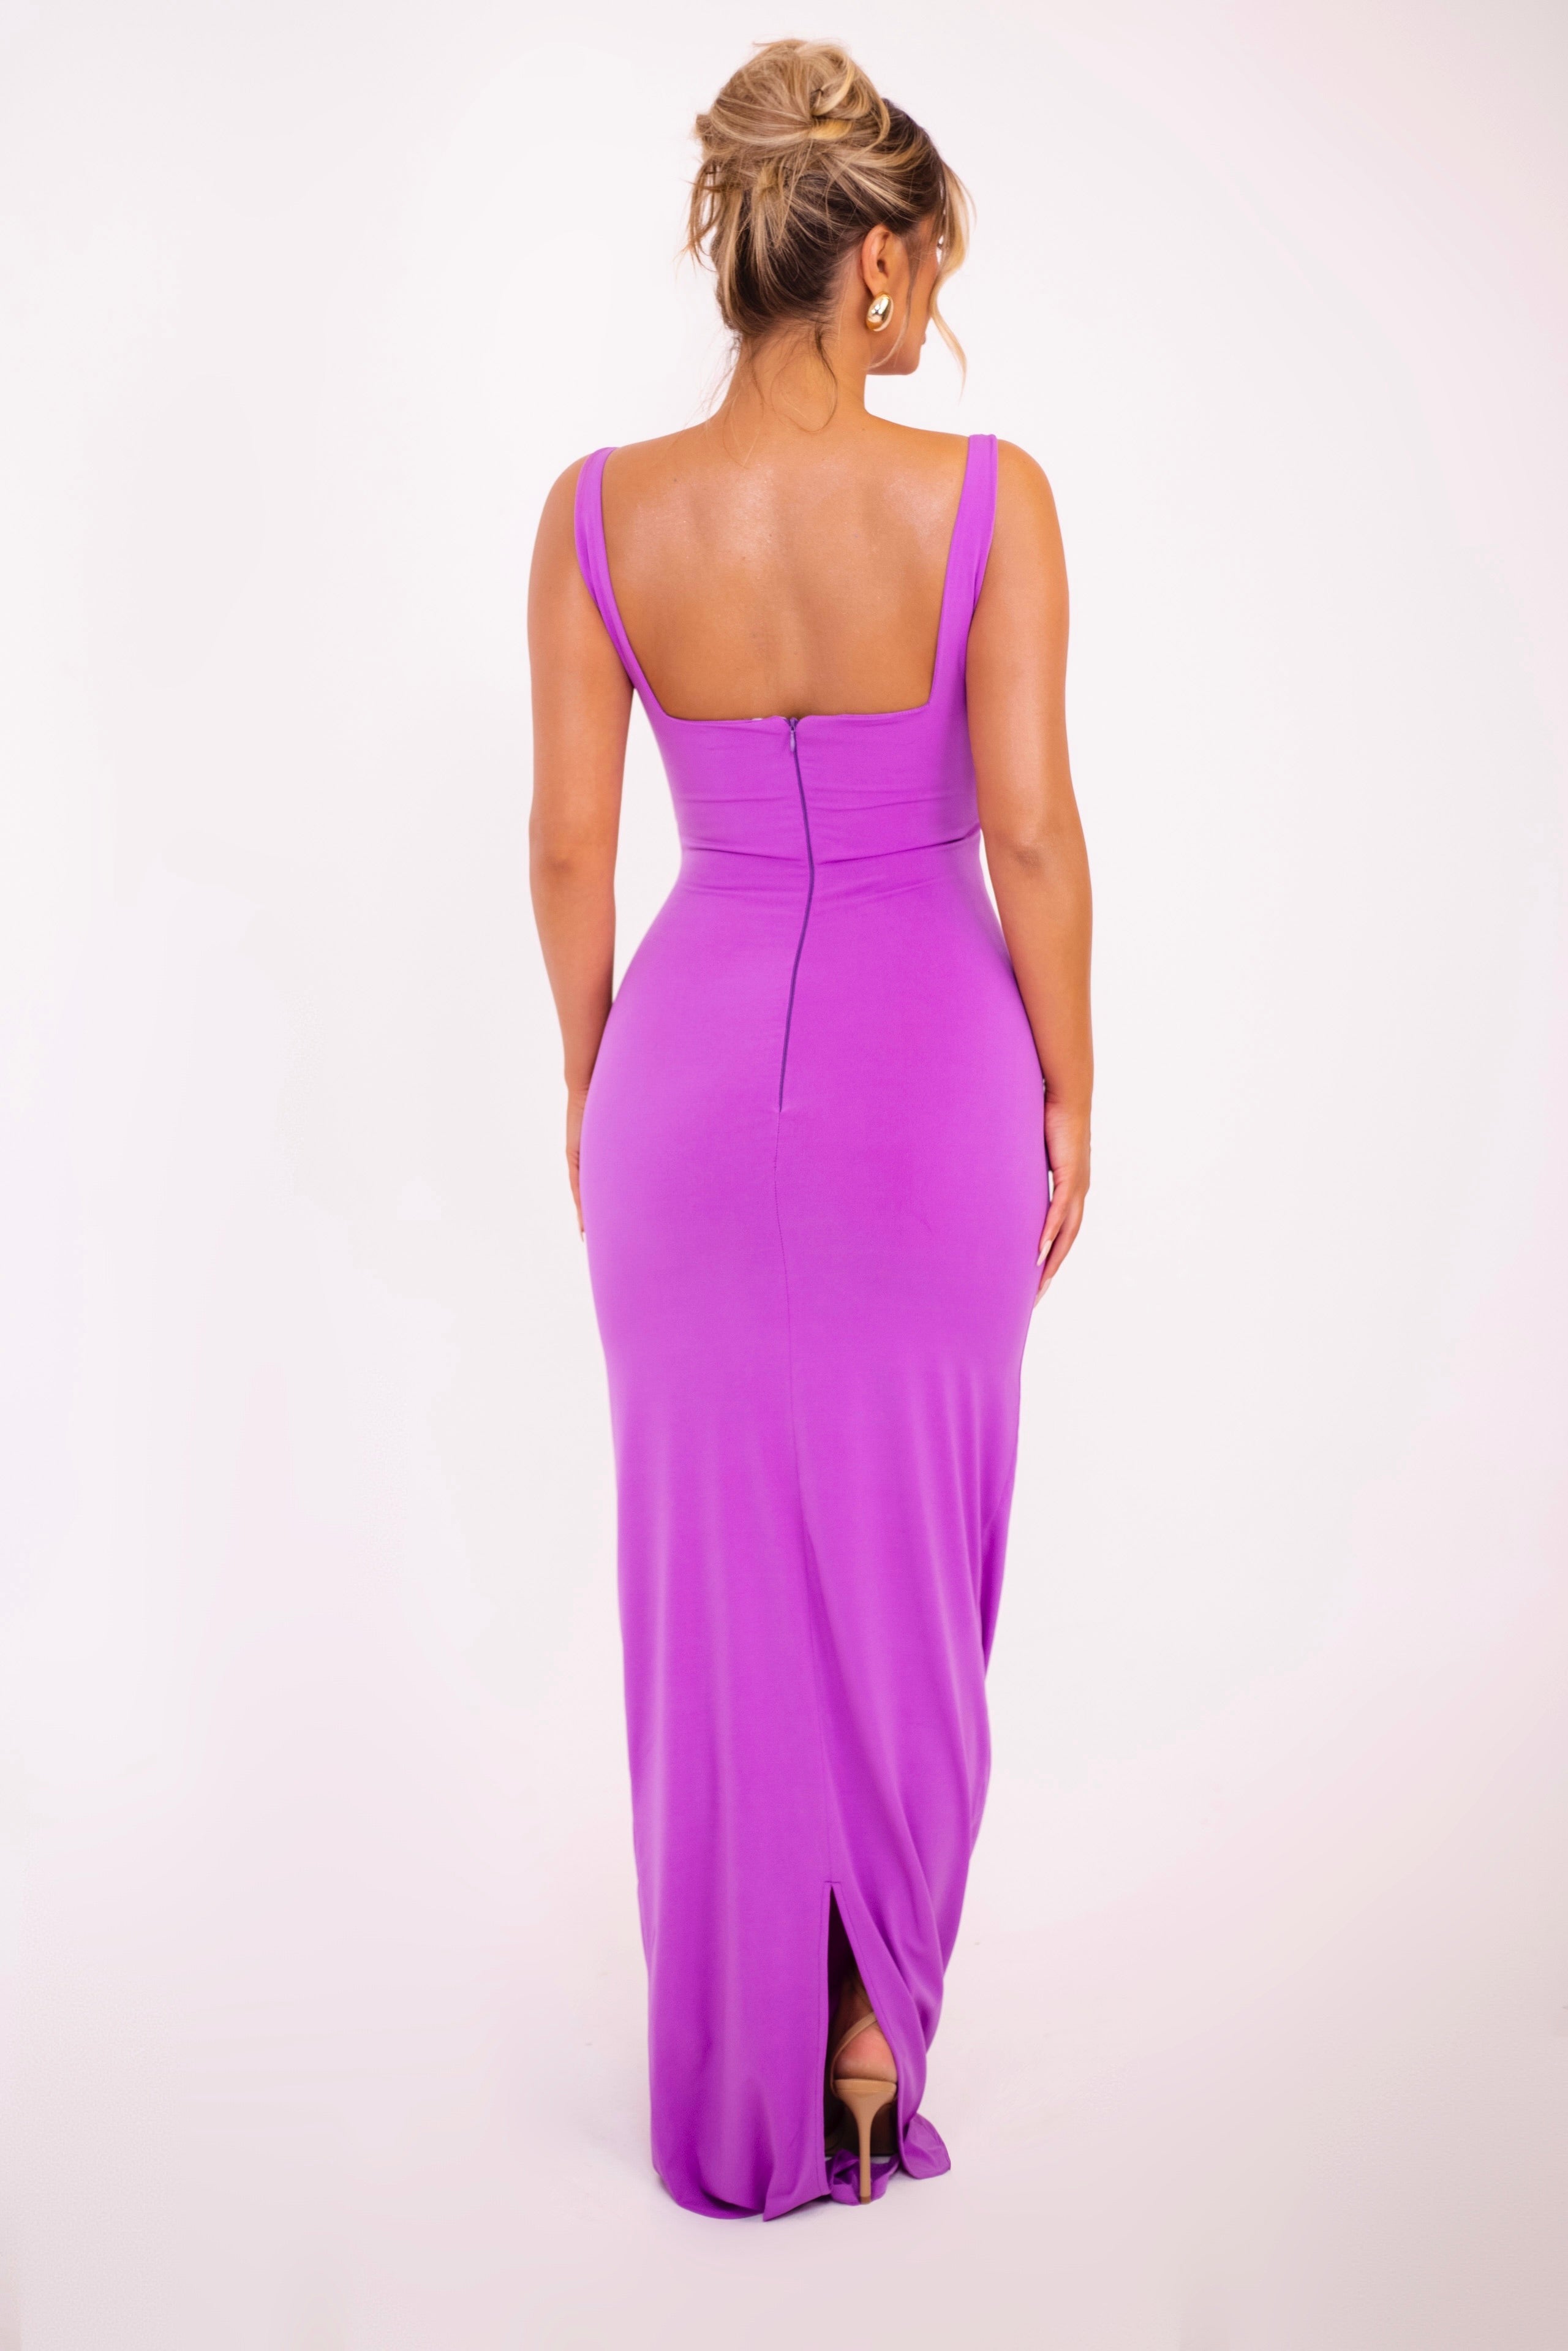 Aroa Purple Dress